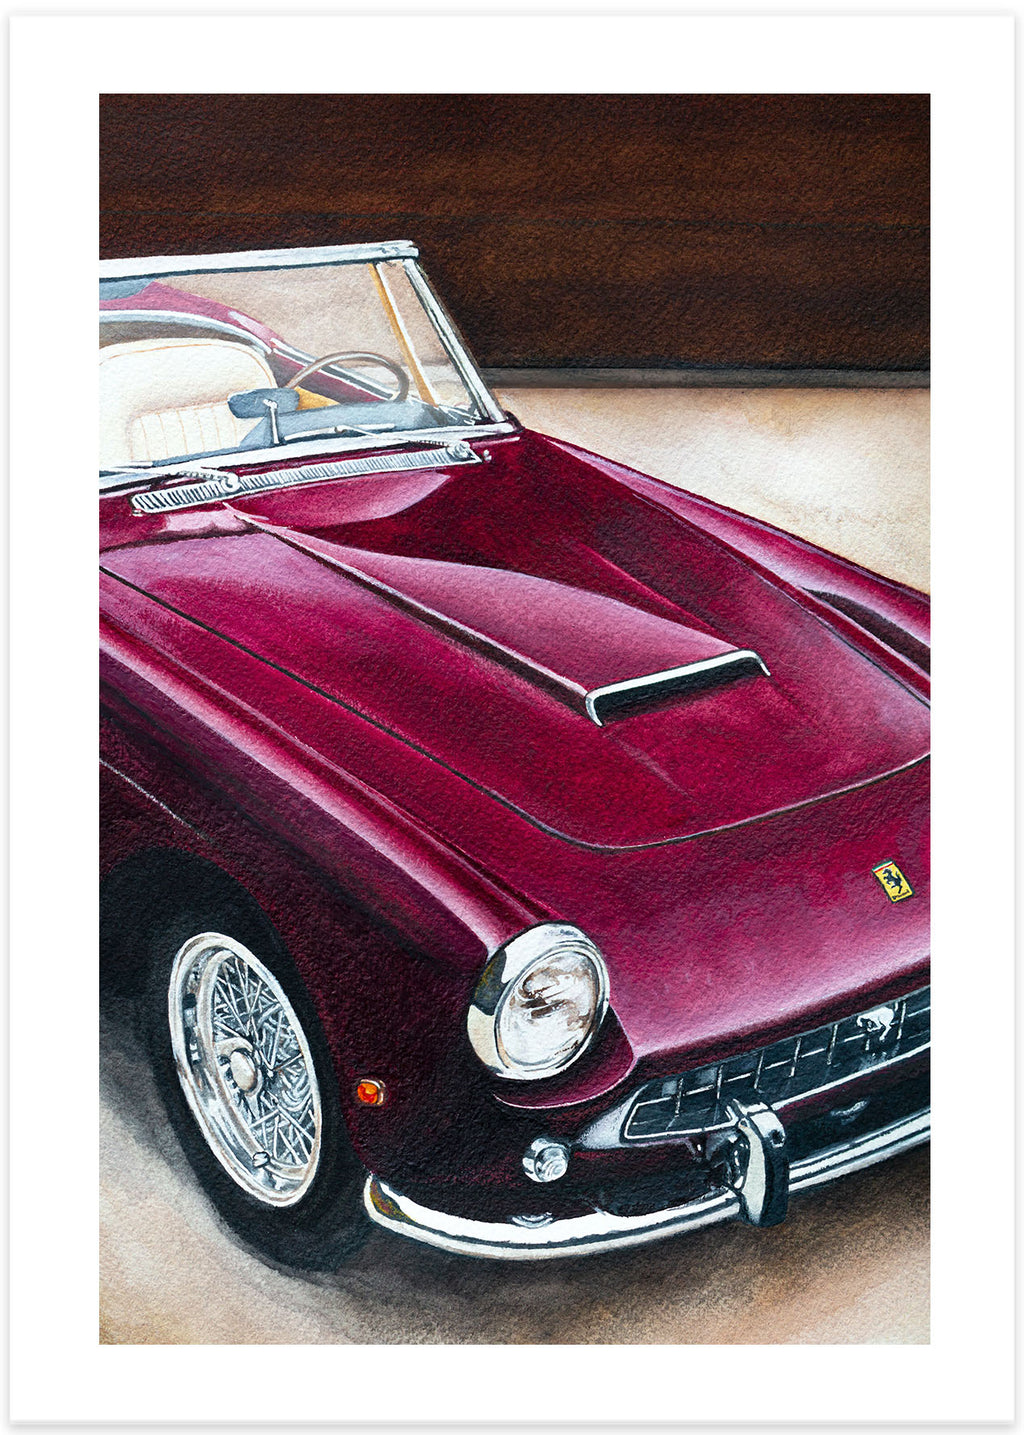 Vintage Ferrari Poster Design by Me : r/design_critiques